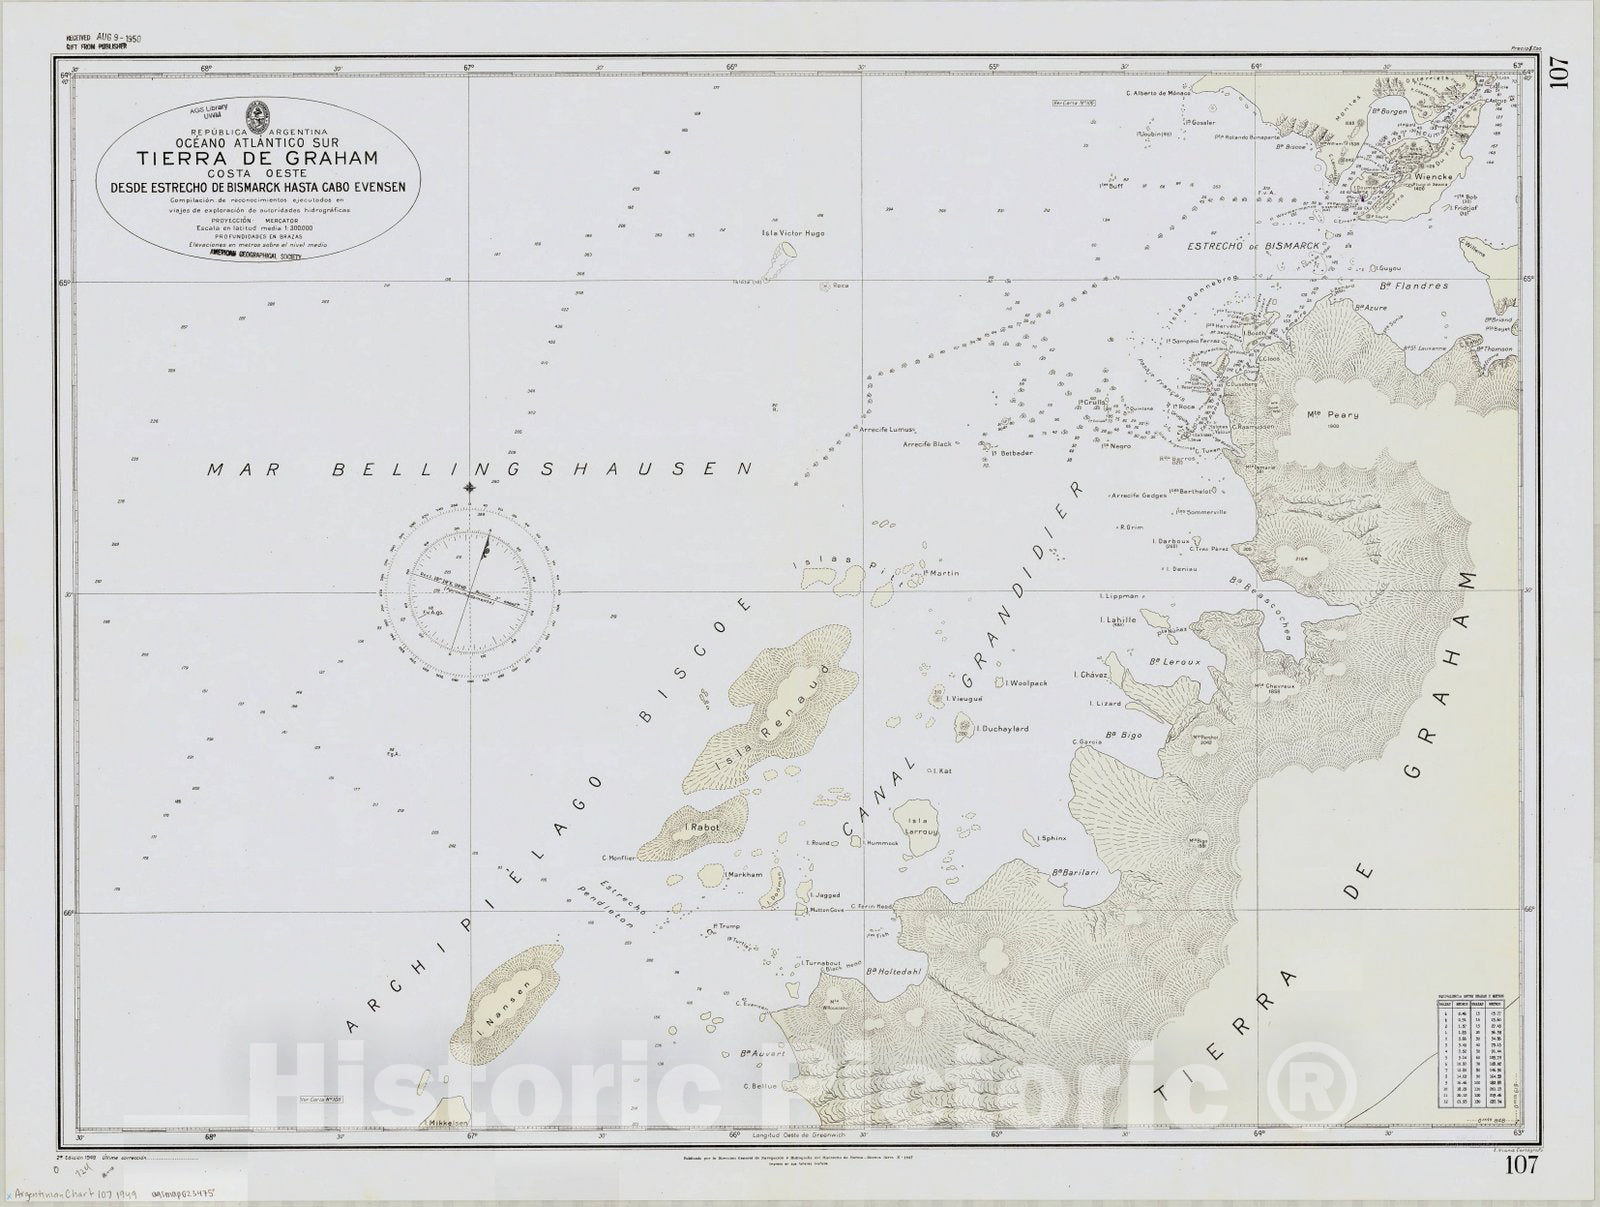 Map : Graham Land, Antarctica 1949, Republica Argentina, Oceano Atlantico Sur, Tierra de Graham, costa oeste, desde estrecho de Bismarck hasta Cabo Evensen